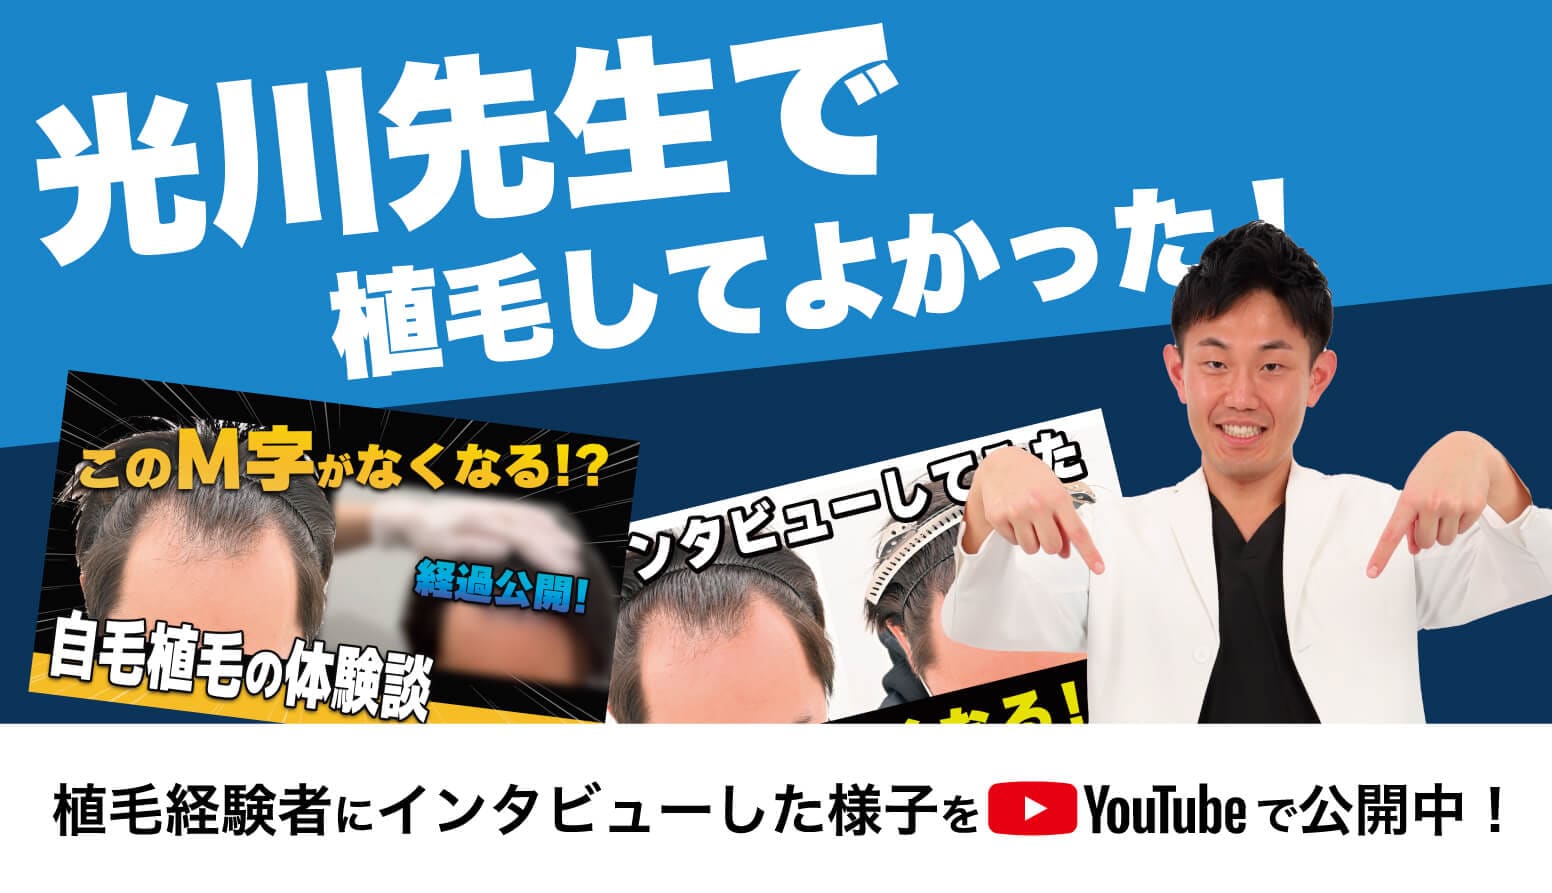 光川先生で植毛してよかった!植毛経験者にインタビューした様子をYouTubeで公開中!